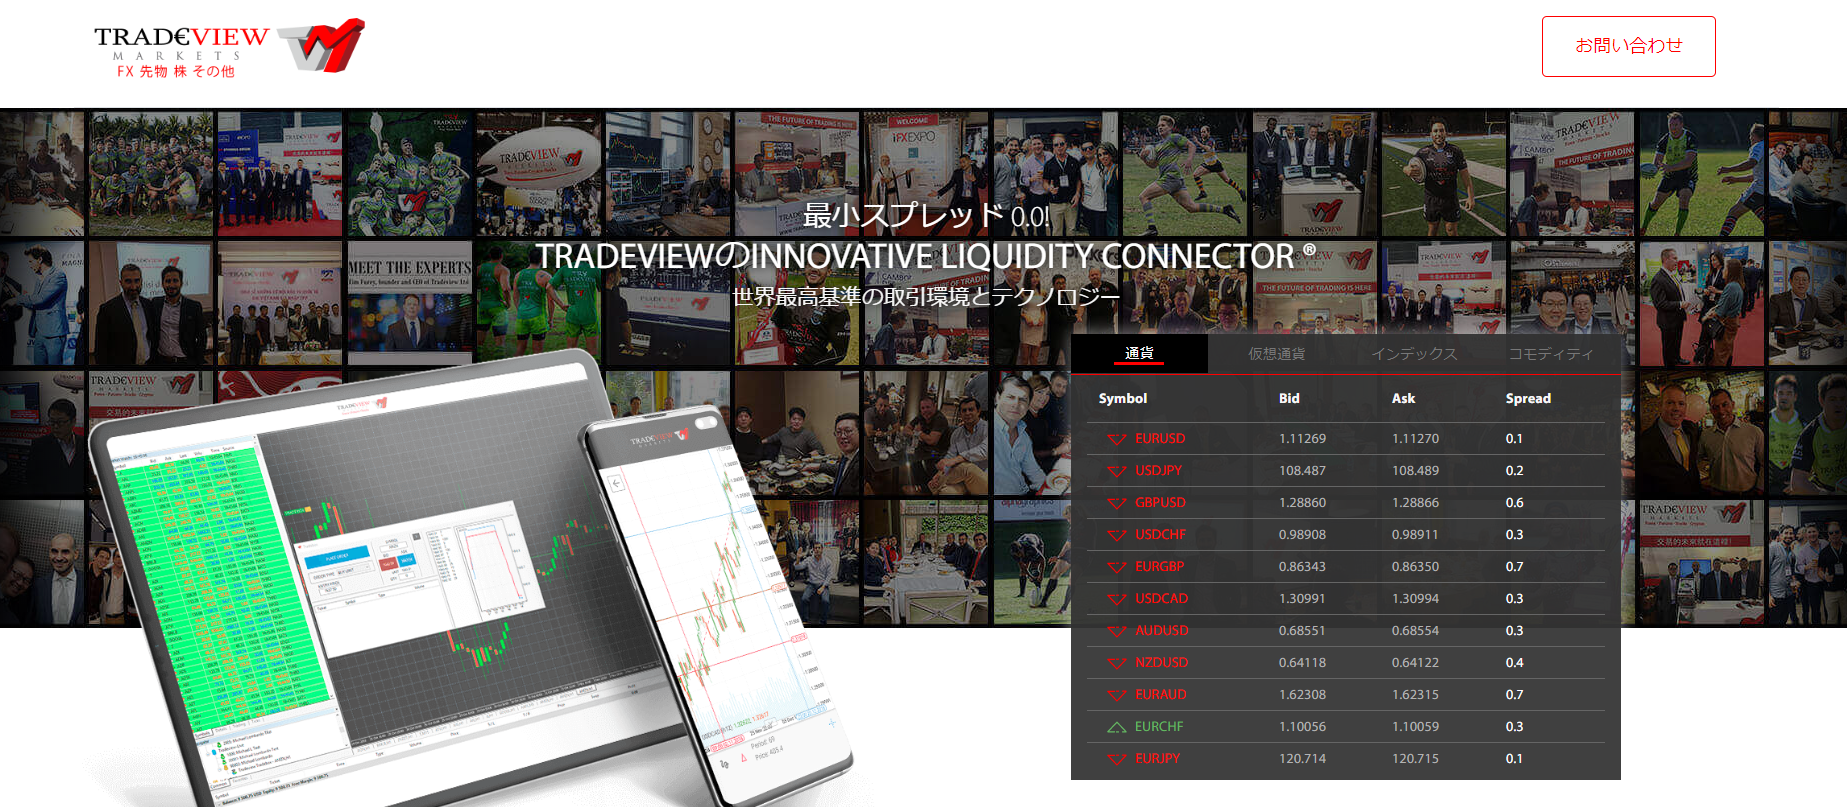 低スプレッドでMT4が使えるTradeviewのメリットと口座開設方法 - Tradeviewの公式サイト